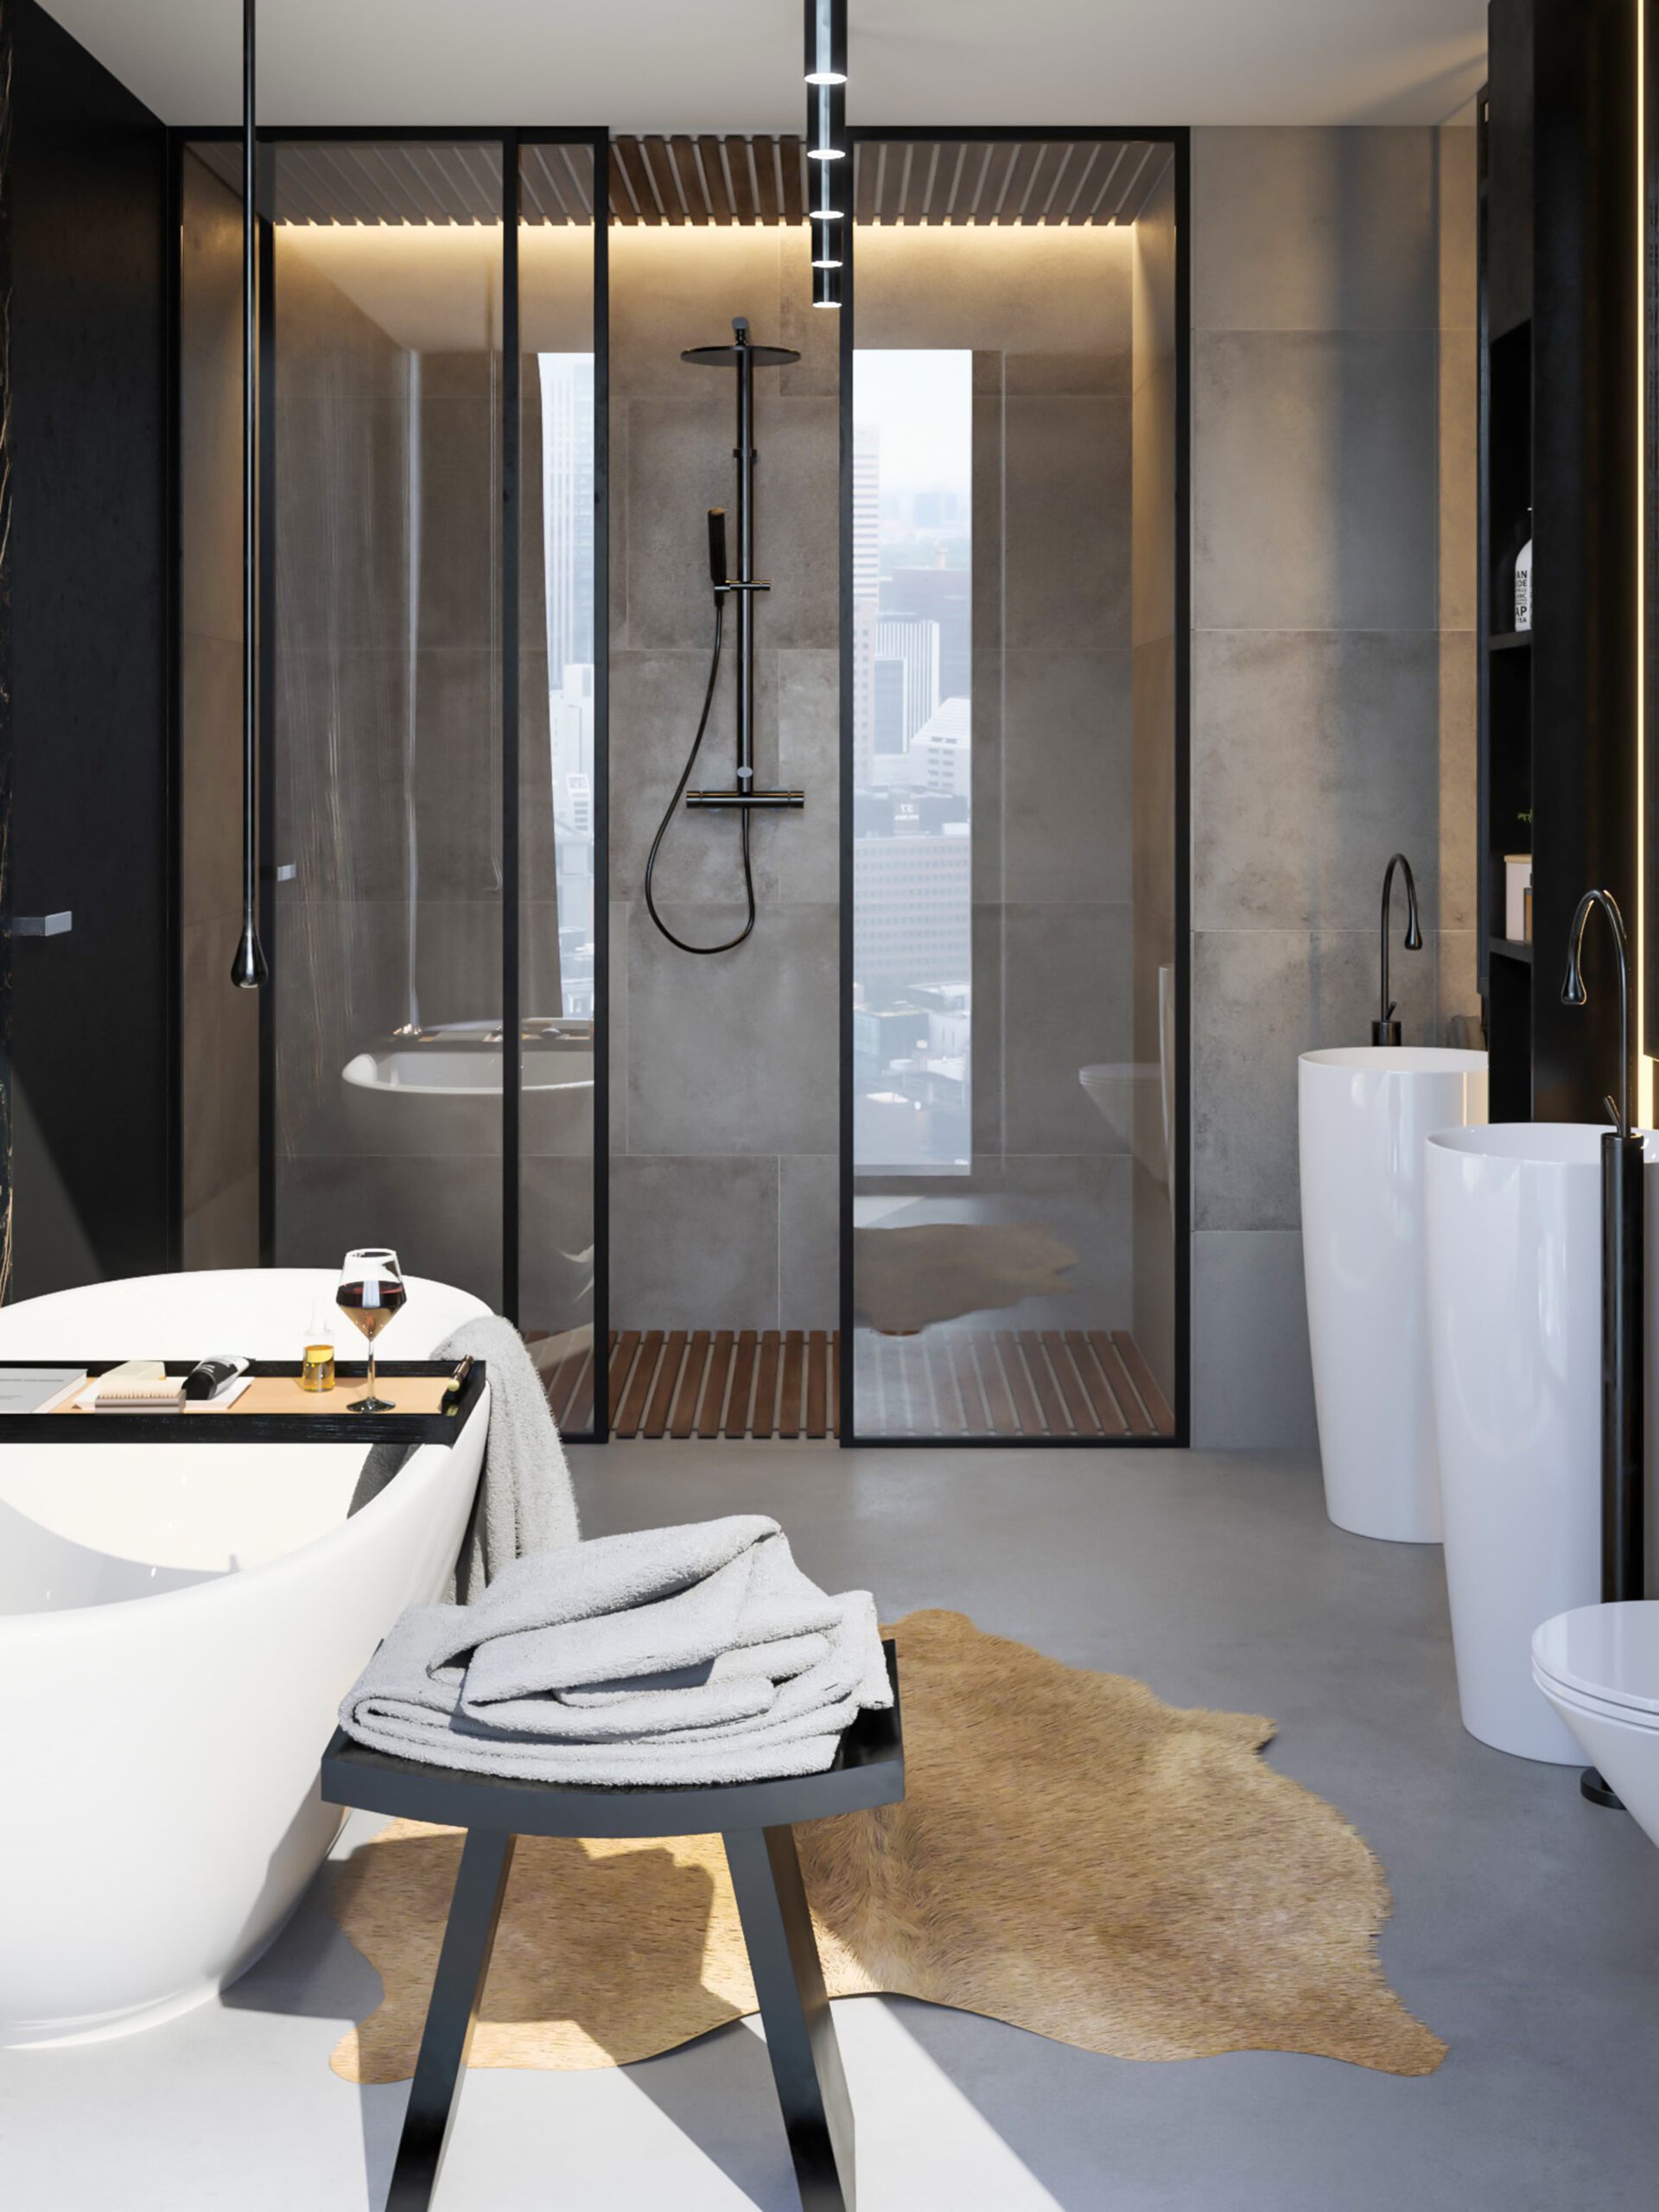 Platos de ducha para baños espaciosos, elegancia y funcionalidad